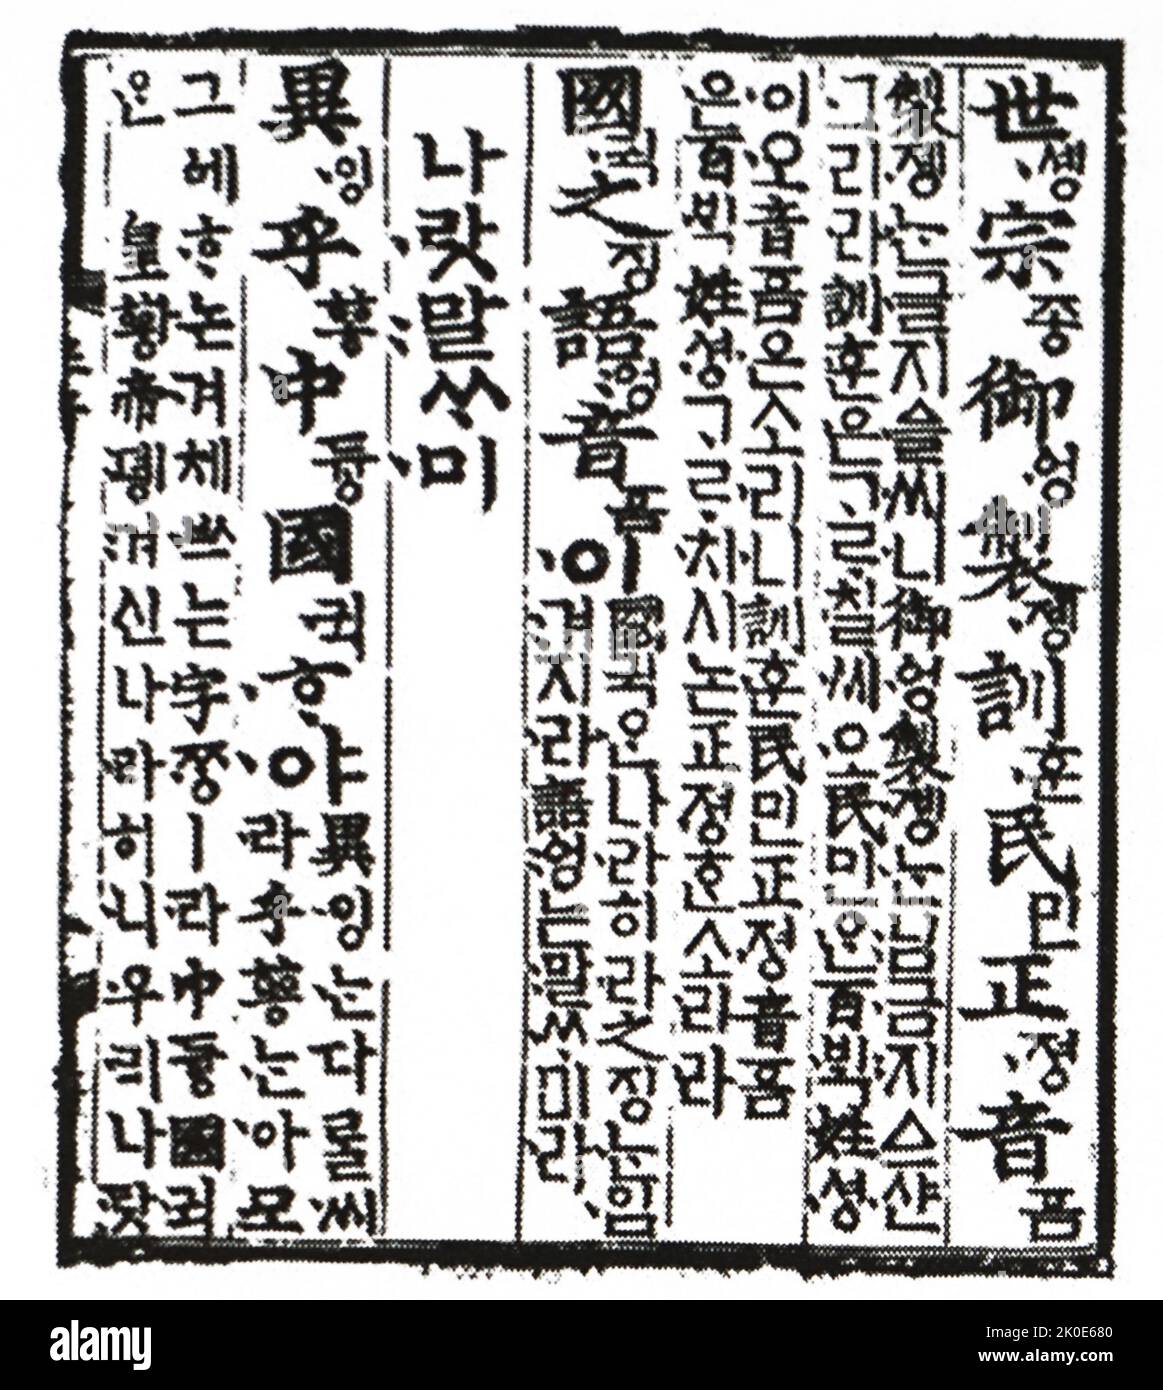 Hunminjeongeum. Dokument, das ein völlig neues und natives Skript für die koreanische Sprache beschreibt. Das Skript wurde erstellt, damit die einfachen Menschen, die in hanja Analphabeten, die koreanische Sprache präzise und einfach lesen und schreiben konnten. Es wurde in Band 102 der Annalen von König Sejong angekündigt, und sein offizielles angebliches Veröffentlichungsdatum, der 9. Oktober 1446, ist jetzt der Hangul-Tag in Südkorea. Stockfoto